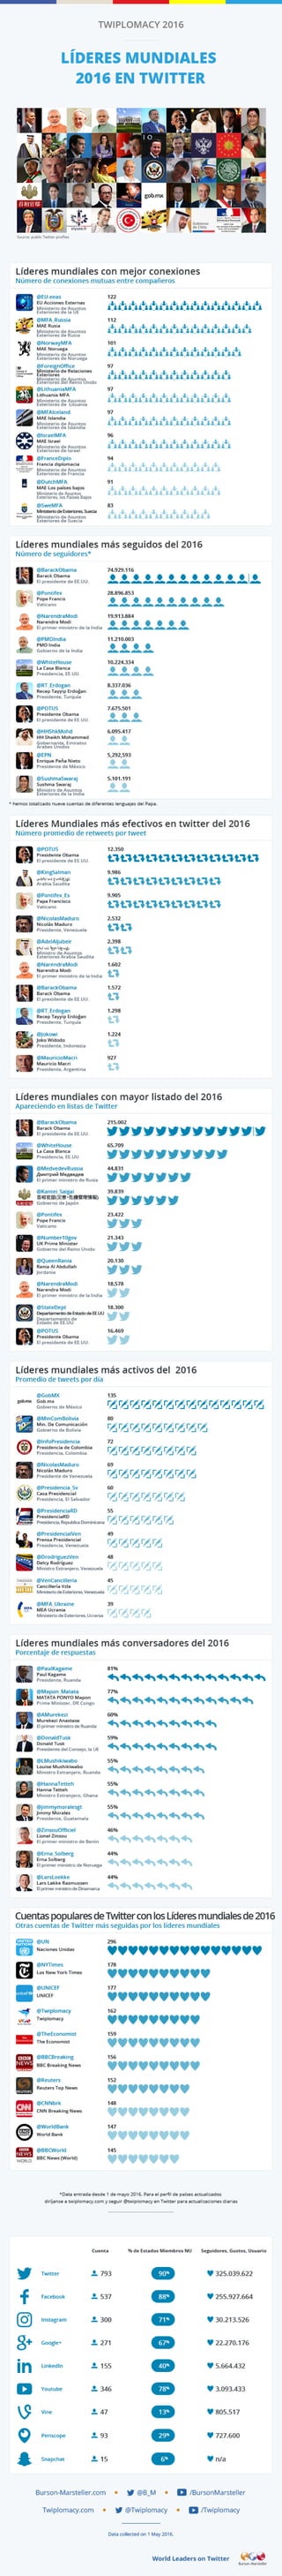 Infografía Twiplomacy 2016 - Líderes mundiales 2016 en Twitter.